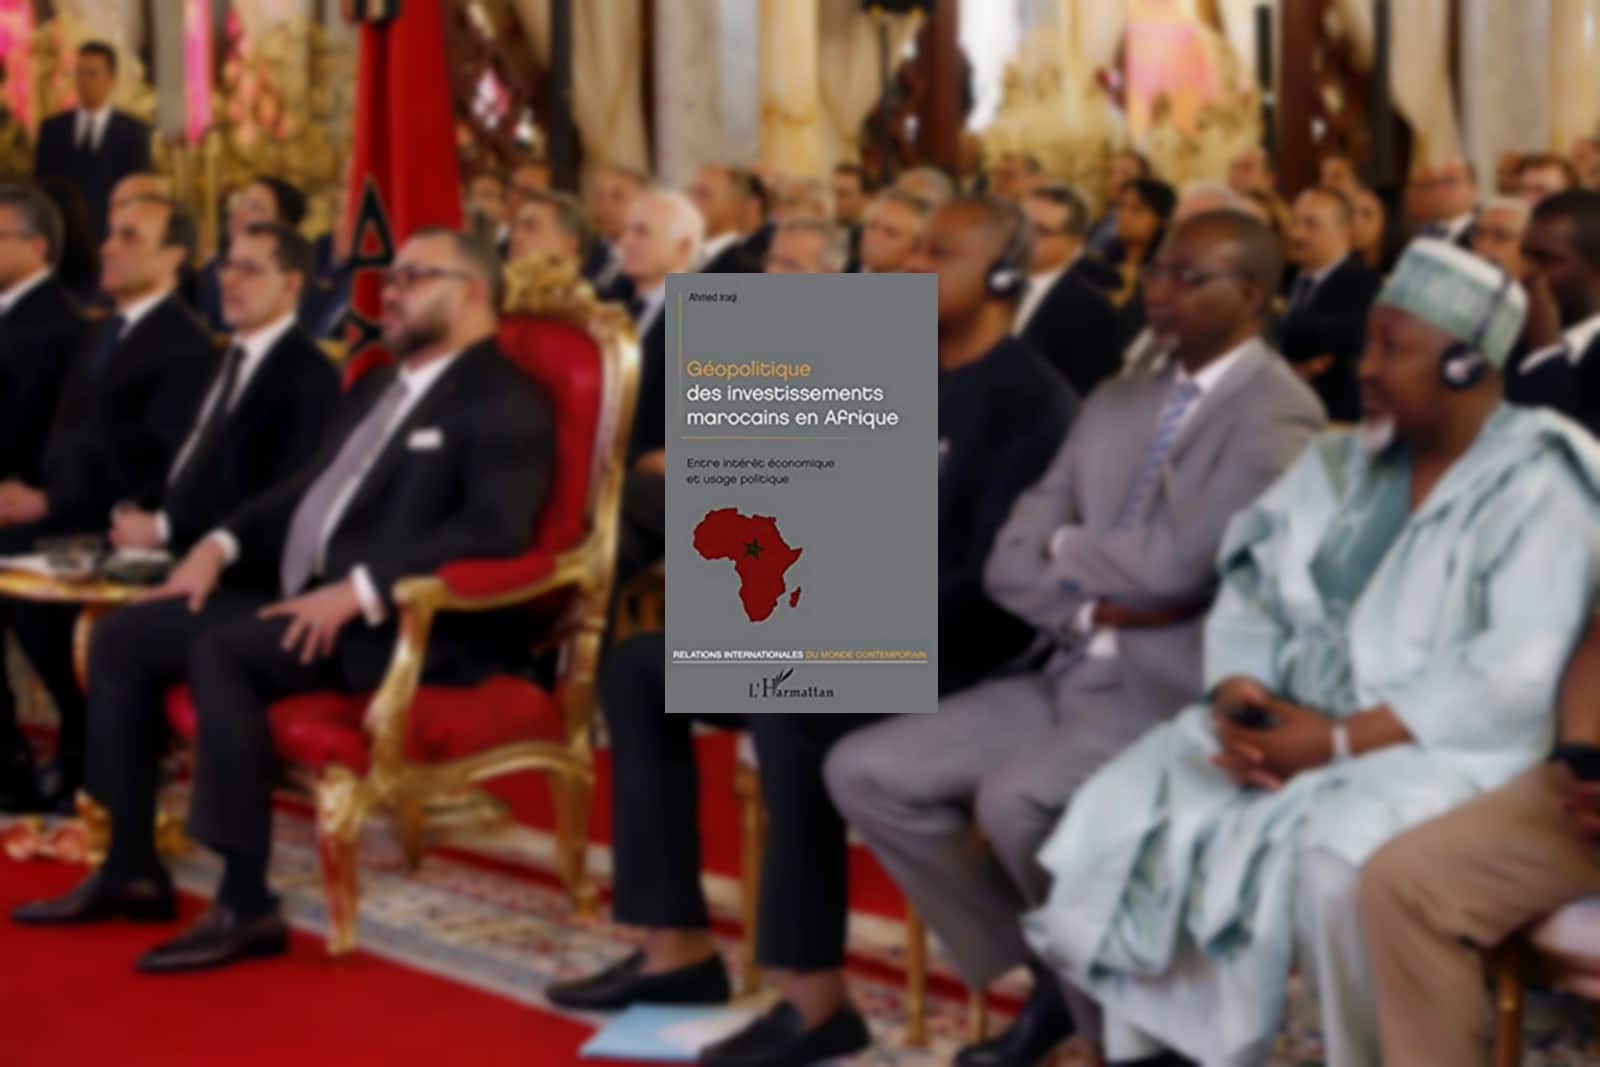 Rencontre entre Mohammed VI et des dignitaires nigérians à Rabat, le 15 mai 2017,
Auteurs  : Abdeljalil Bounhar/AP/SIPA,
Numéro de reportage  : AP22053389_000006.